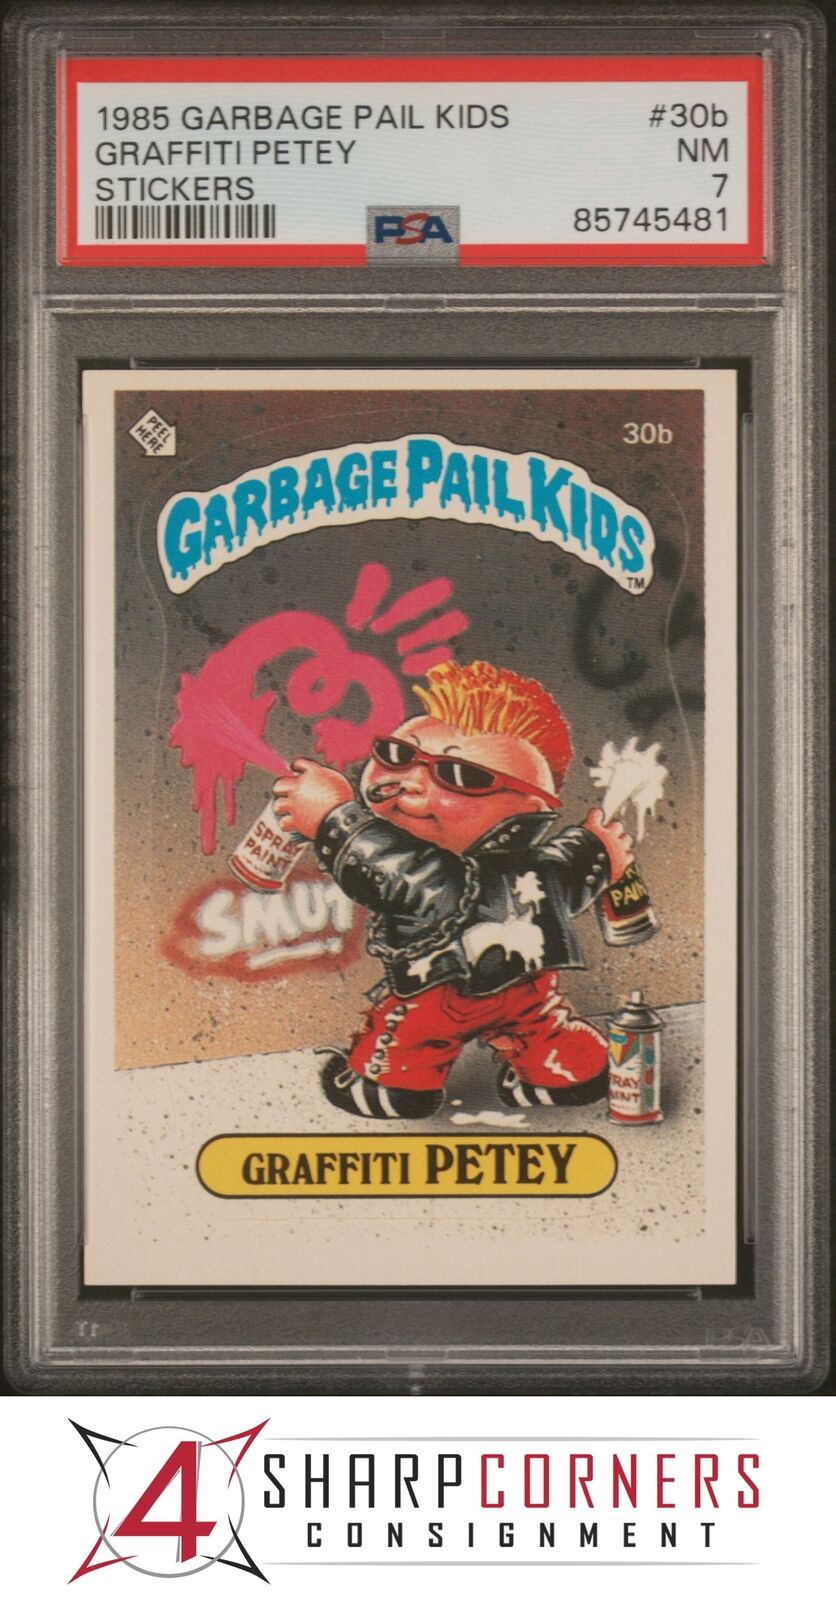 1985 GARBAGE PAIL KIDS STICKERS #30b GRAFFITI PETEY SER 1 PSA 7 N3915476-481